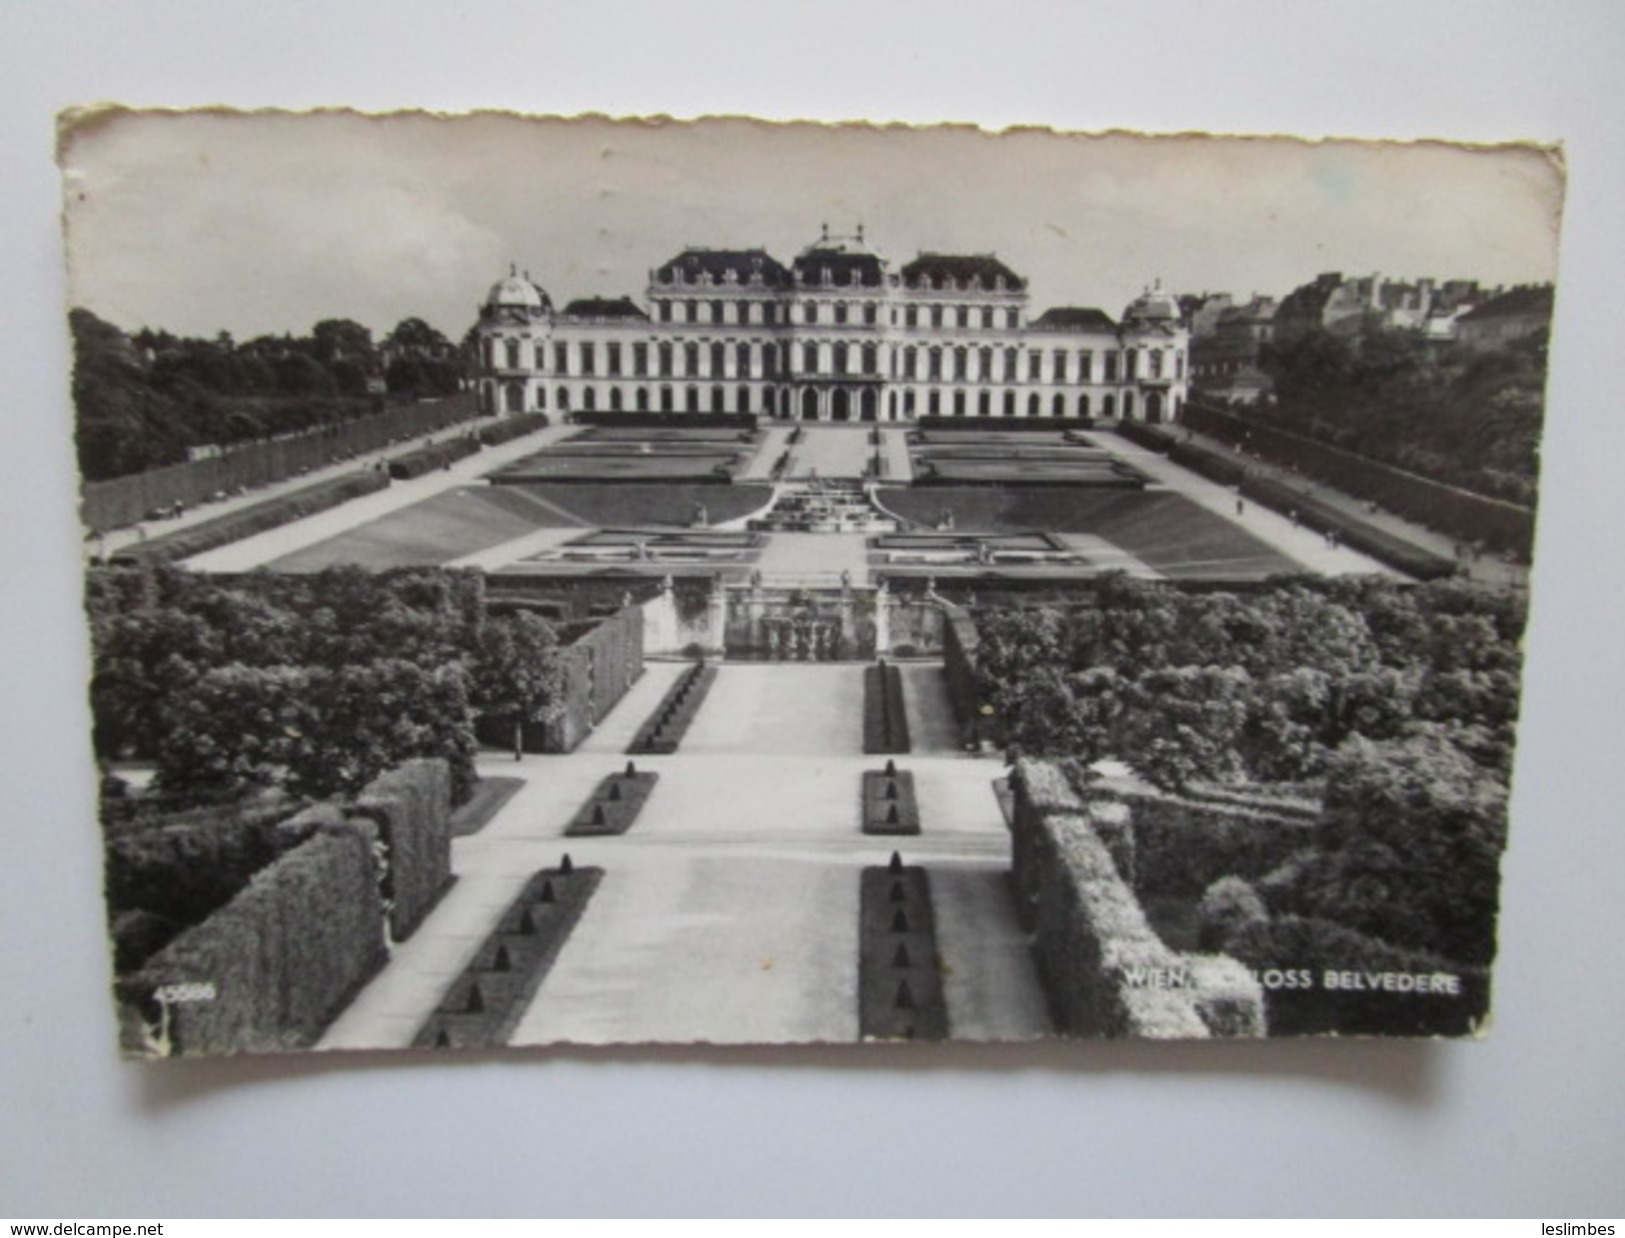 Wien, Schloss Belvedere. PAG 45586. Postmarked 1961. - Belvedere